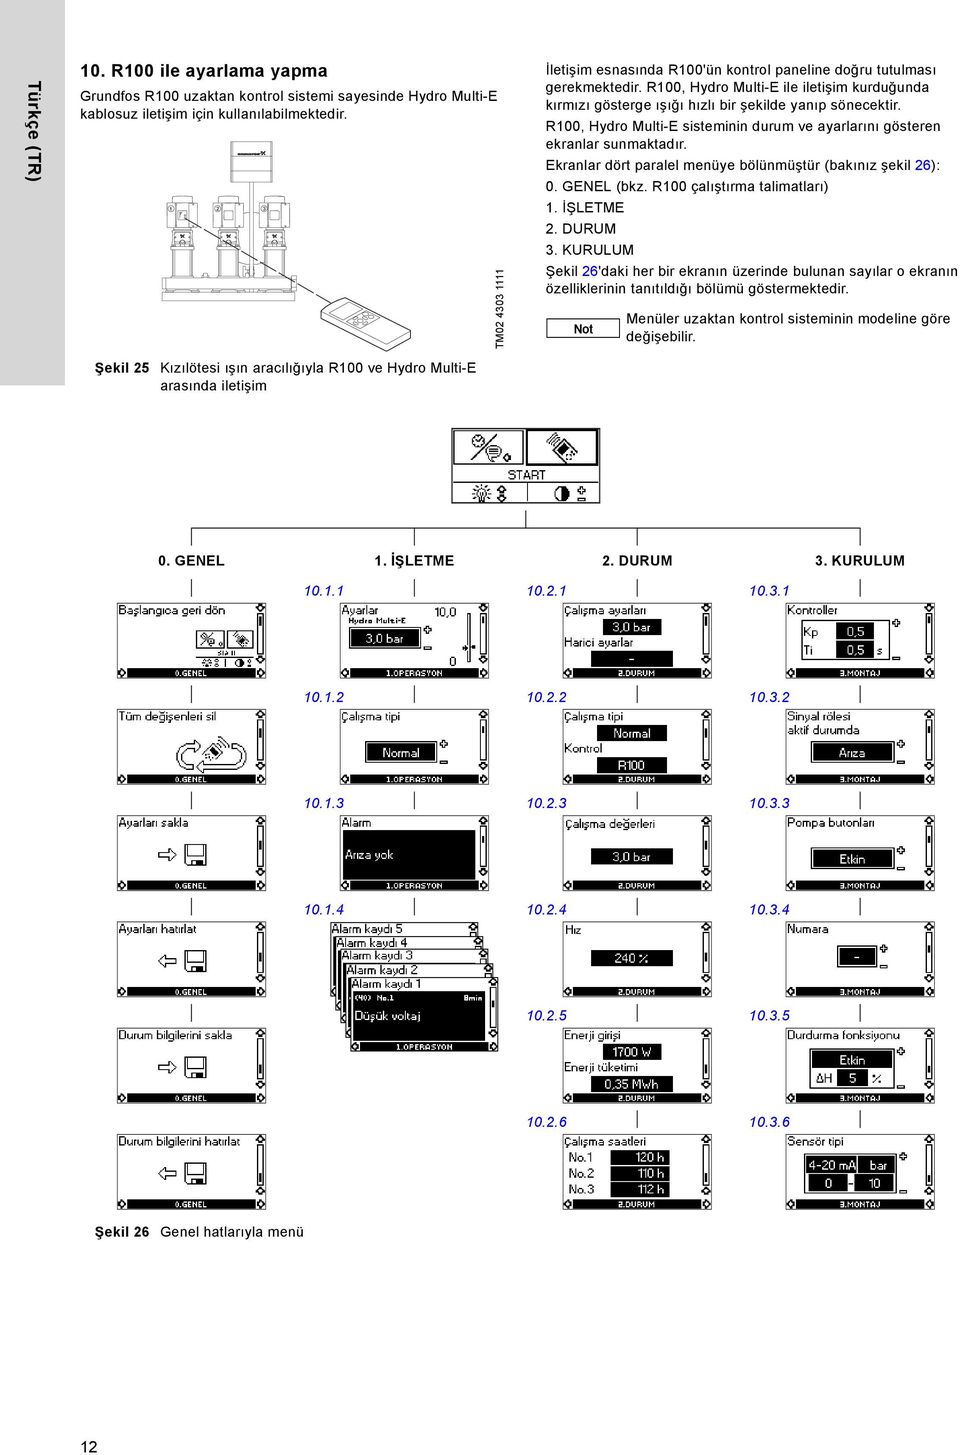 R1, ydro Multi-E sisteminin durum ve ayarlarını gösteren ekranlar sunmaktadır. Ekranlar dört paralel menüye bölünmüştür (bakınız şekil 26):. GENEL (bkz. R1 çalıştırma talimatları) 1. İŞLETME 2.